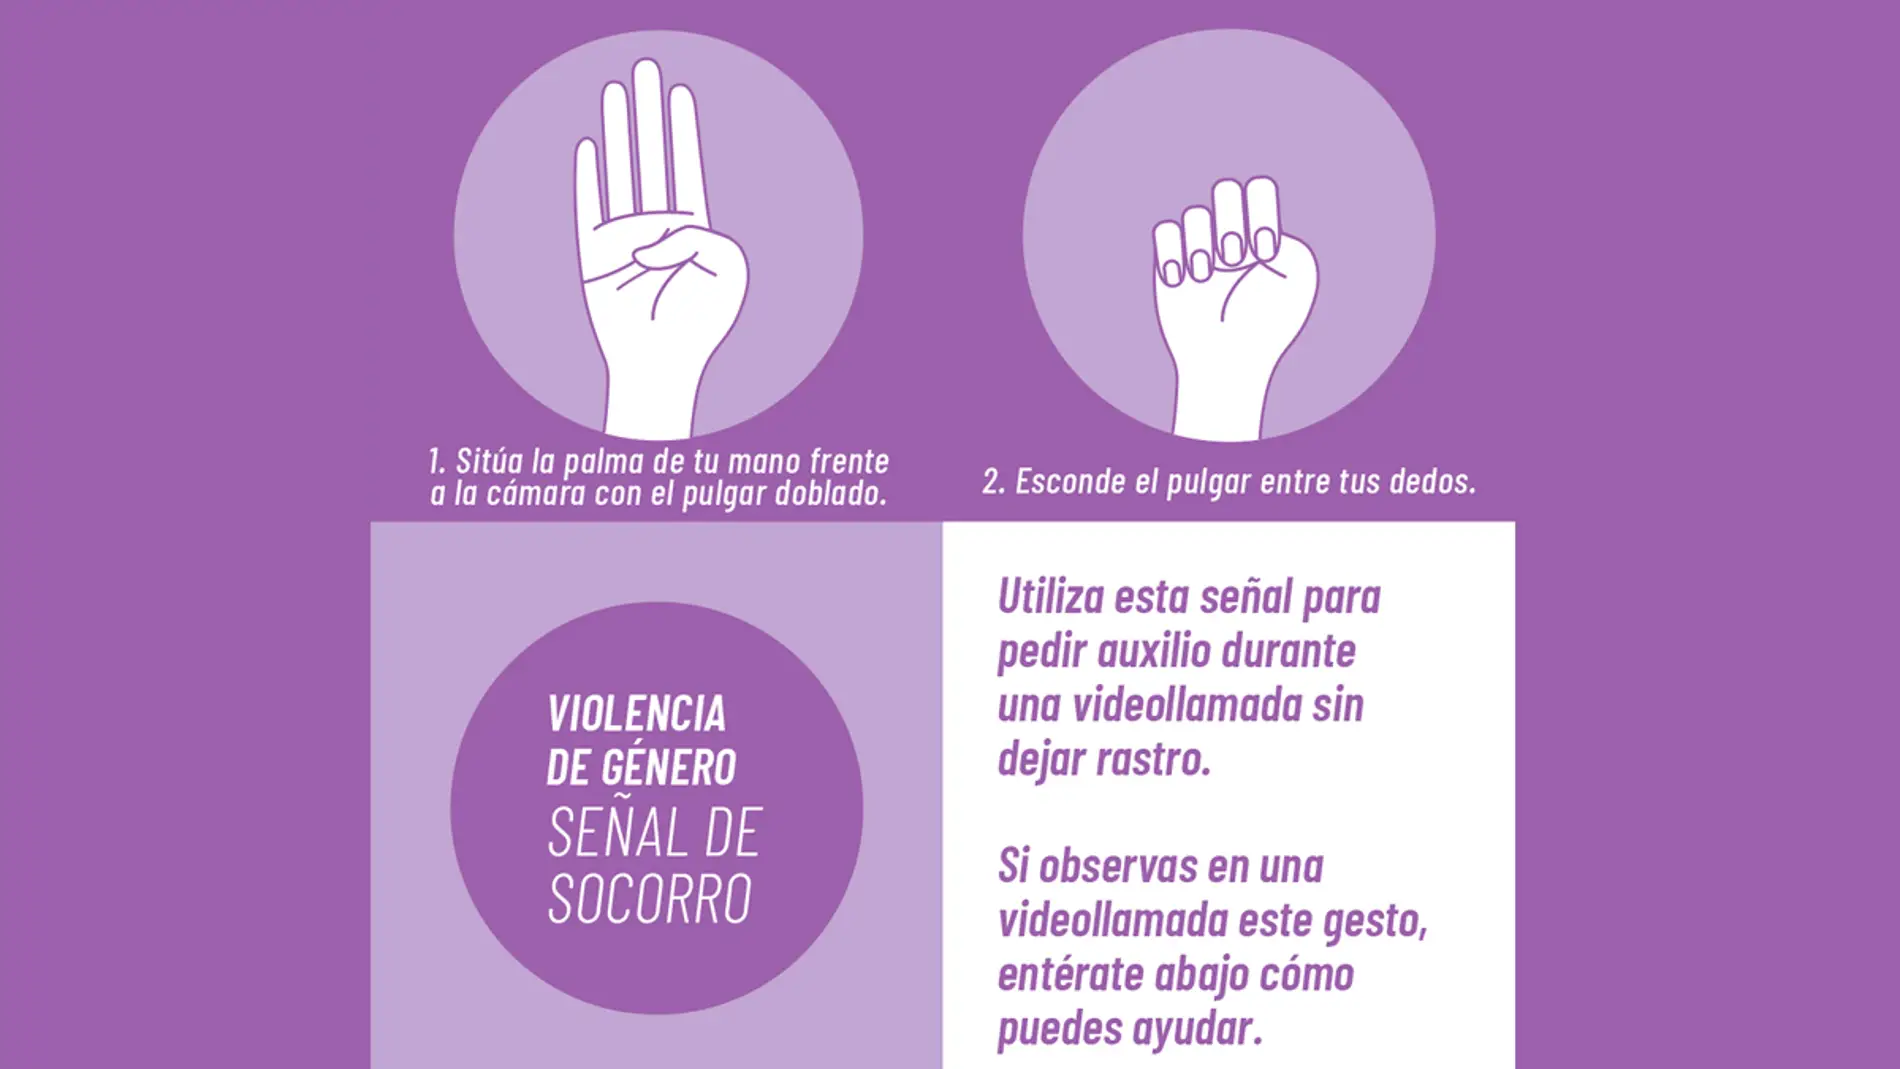 Campaña de señal de socorro por la violencia de género de Canadian Women's Foundation